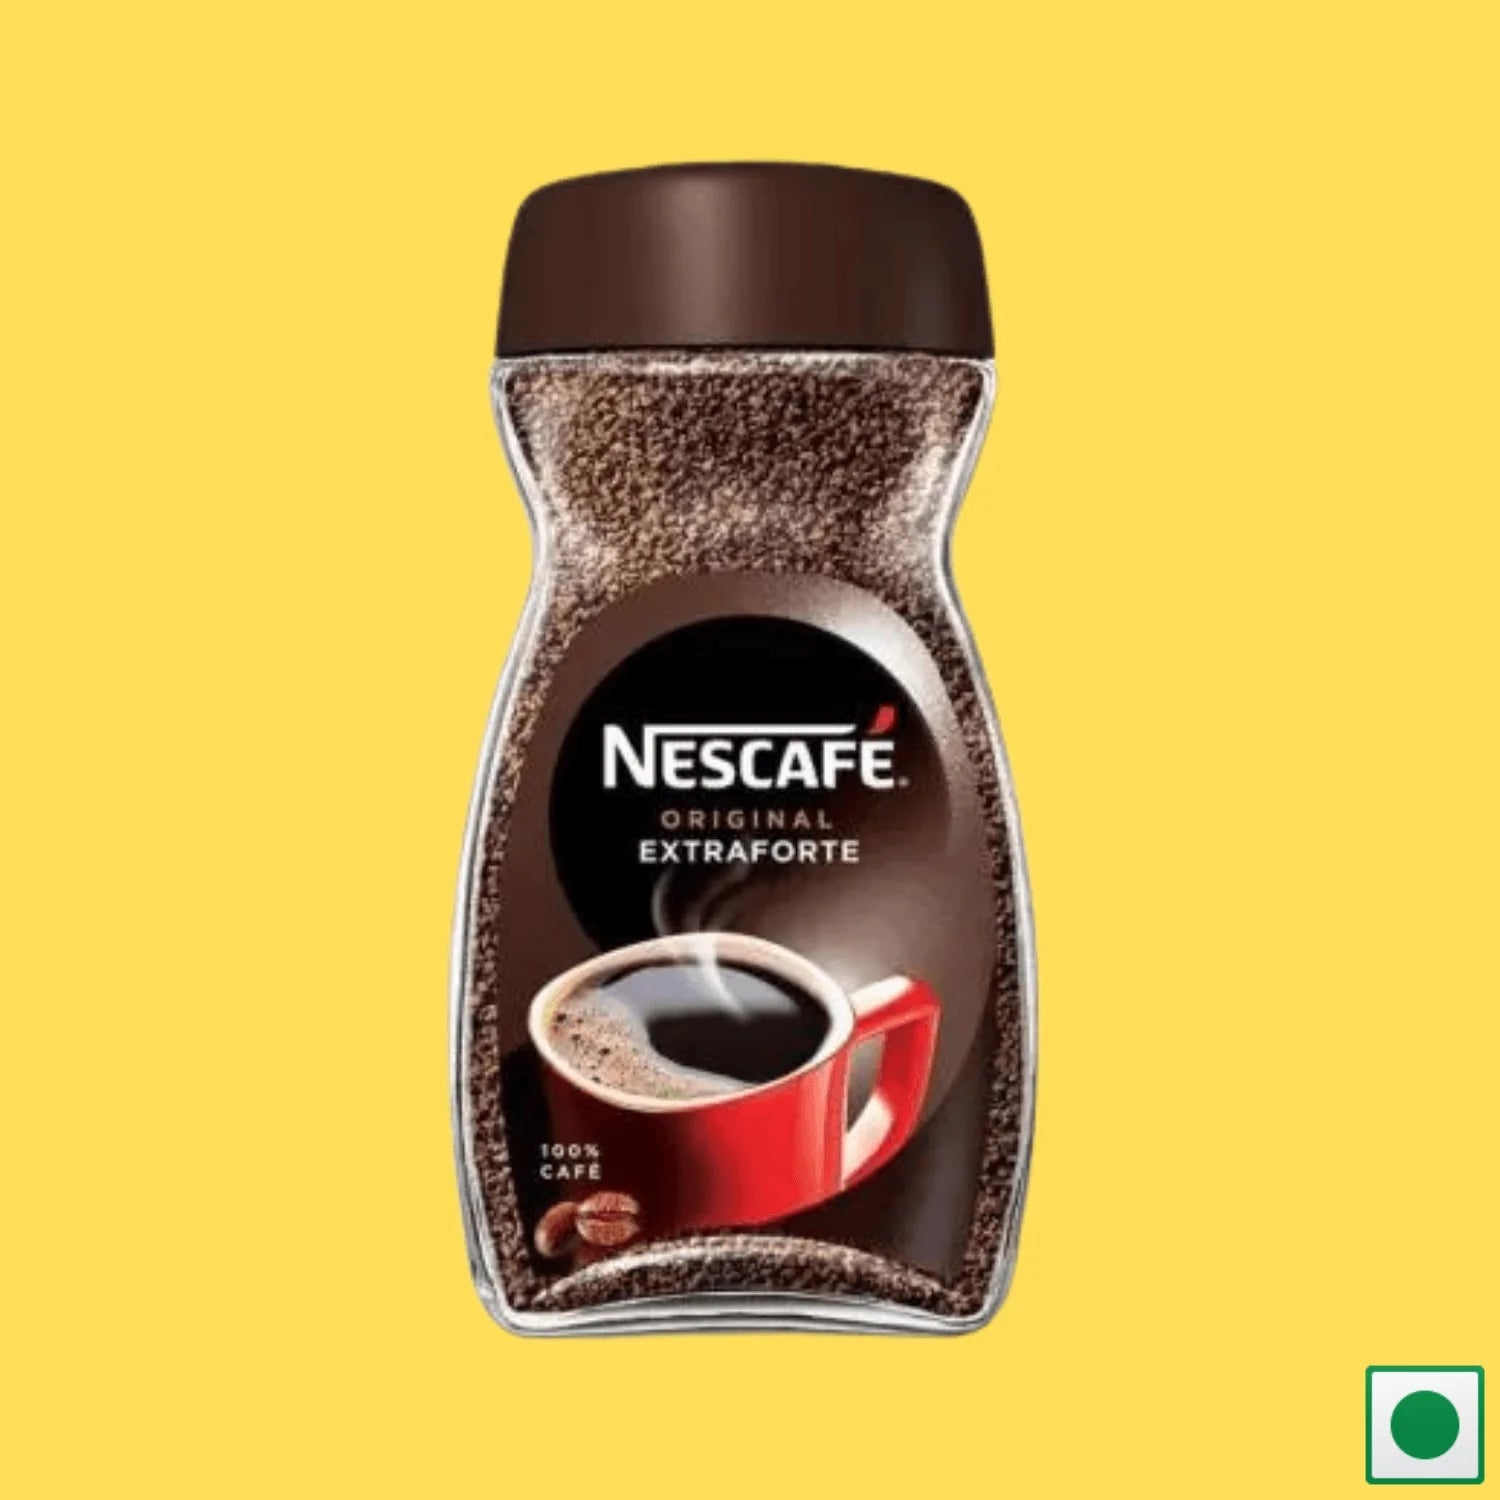 Nescafe Original Extraforte Coffee, 160g (Imported) - Super 7 Mart